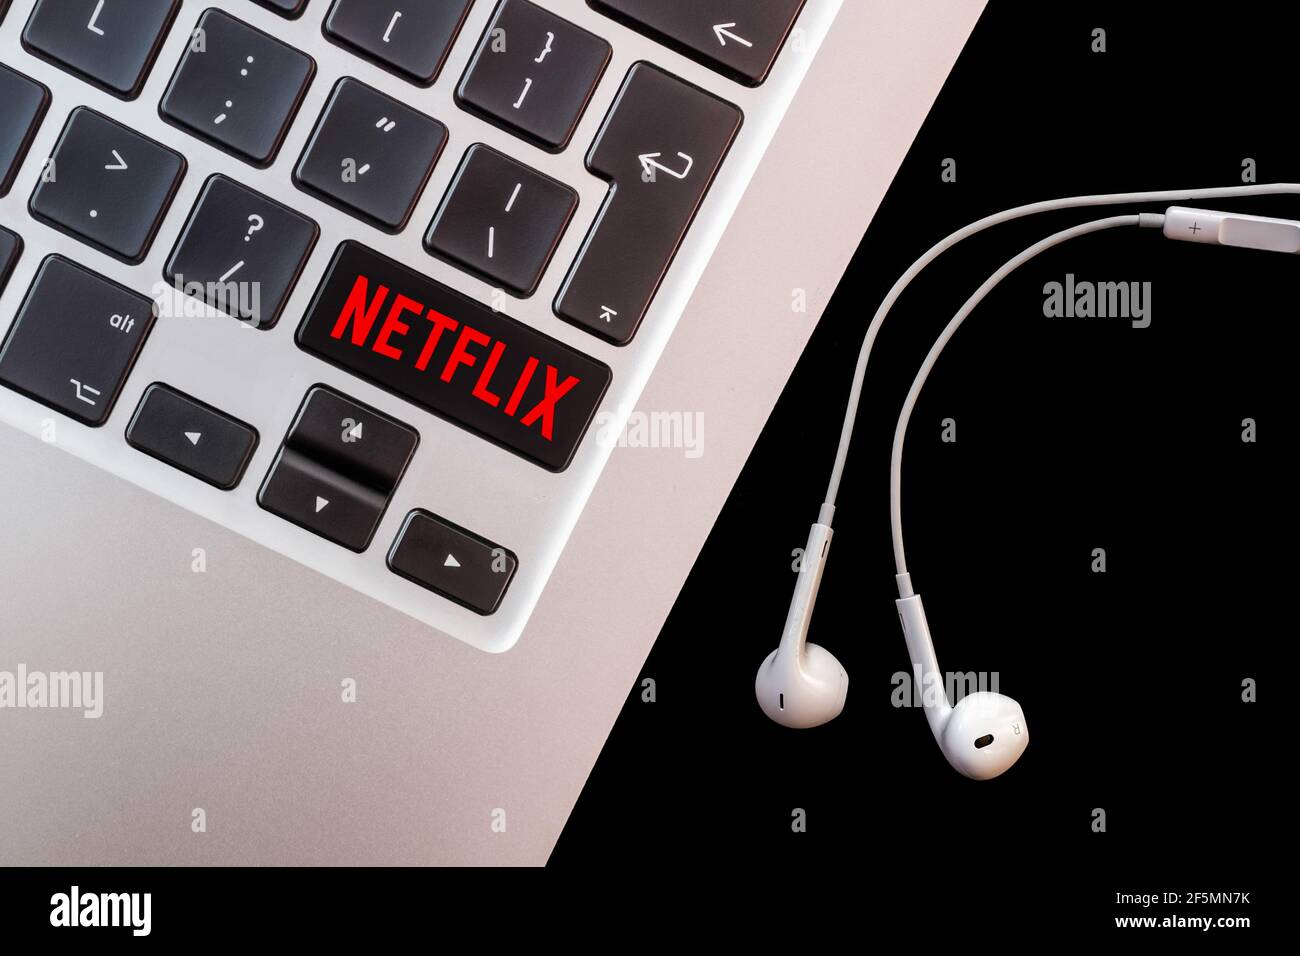 Laptop with Netflix logo on keyboard. Illustration. Stock Photo